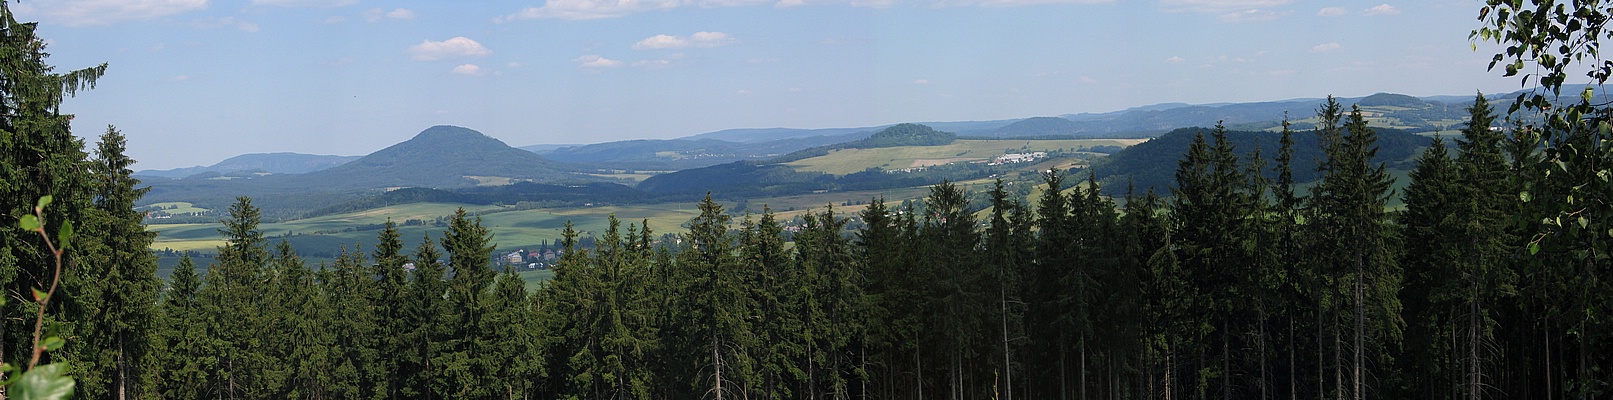 Markvartice a panorama Národního parku České Švýcarsko